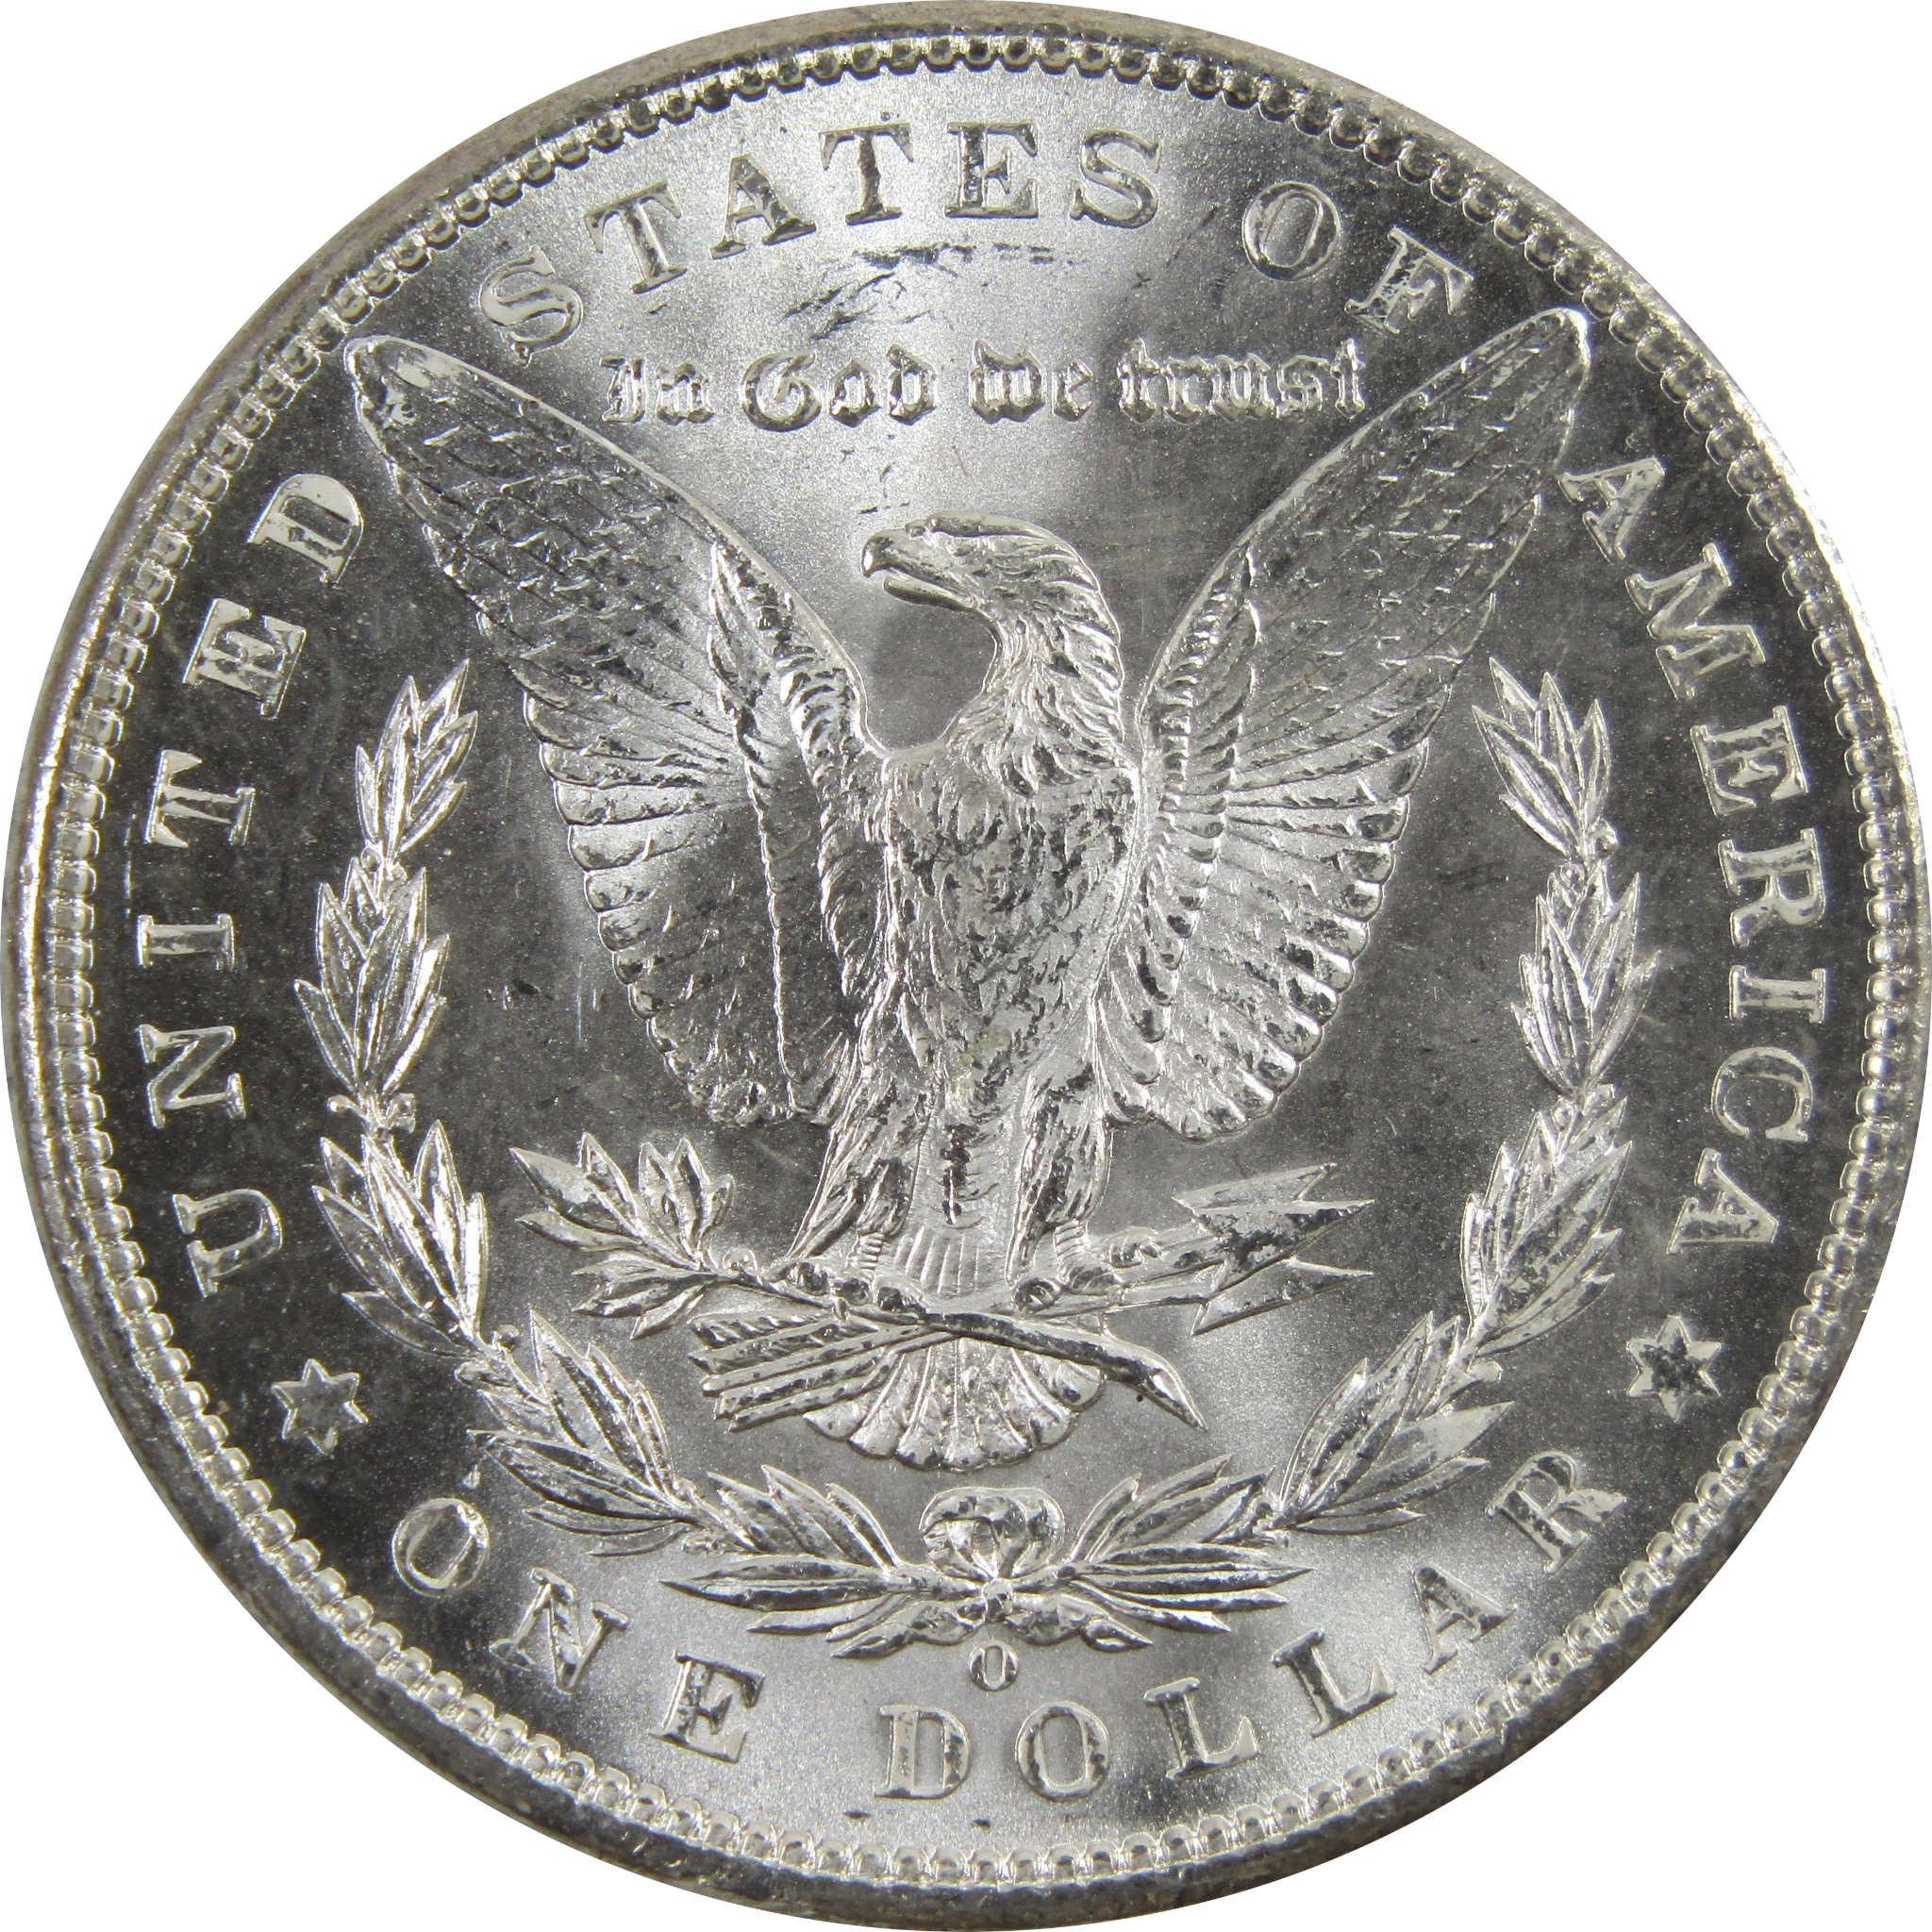 1898 O Morgan Dollar BU Uncirculated 90% Silver $1 Coin SKU:I5274 - Morgan coin - Morgan silver dollar - Morgan silver dollar for sale - Profile Coins &amp; Collectibles